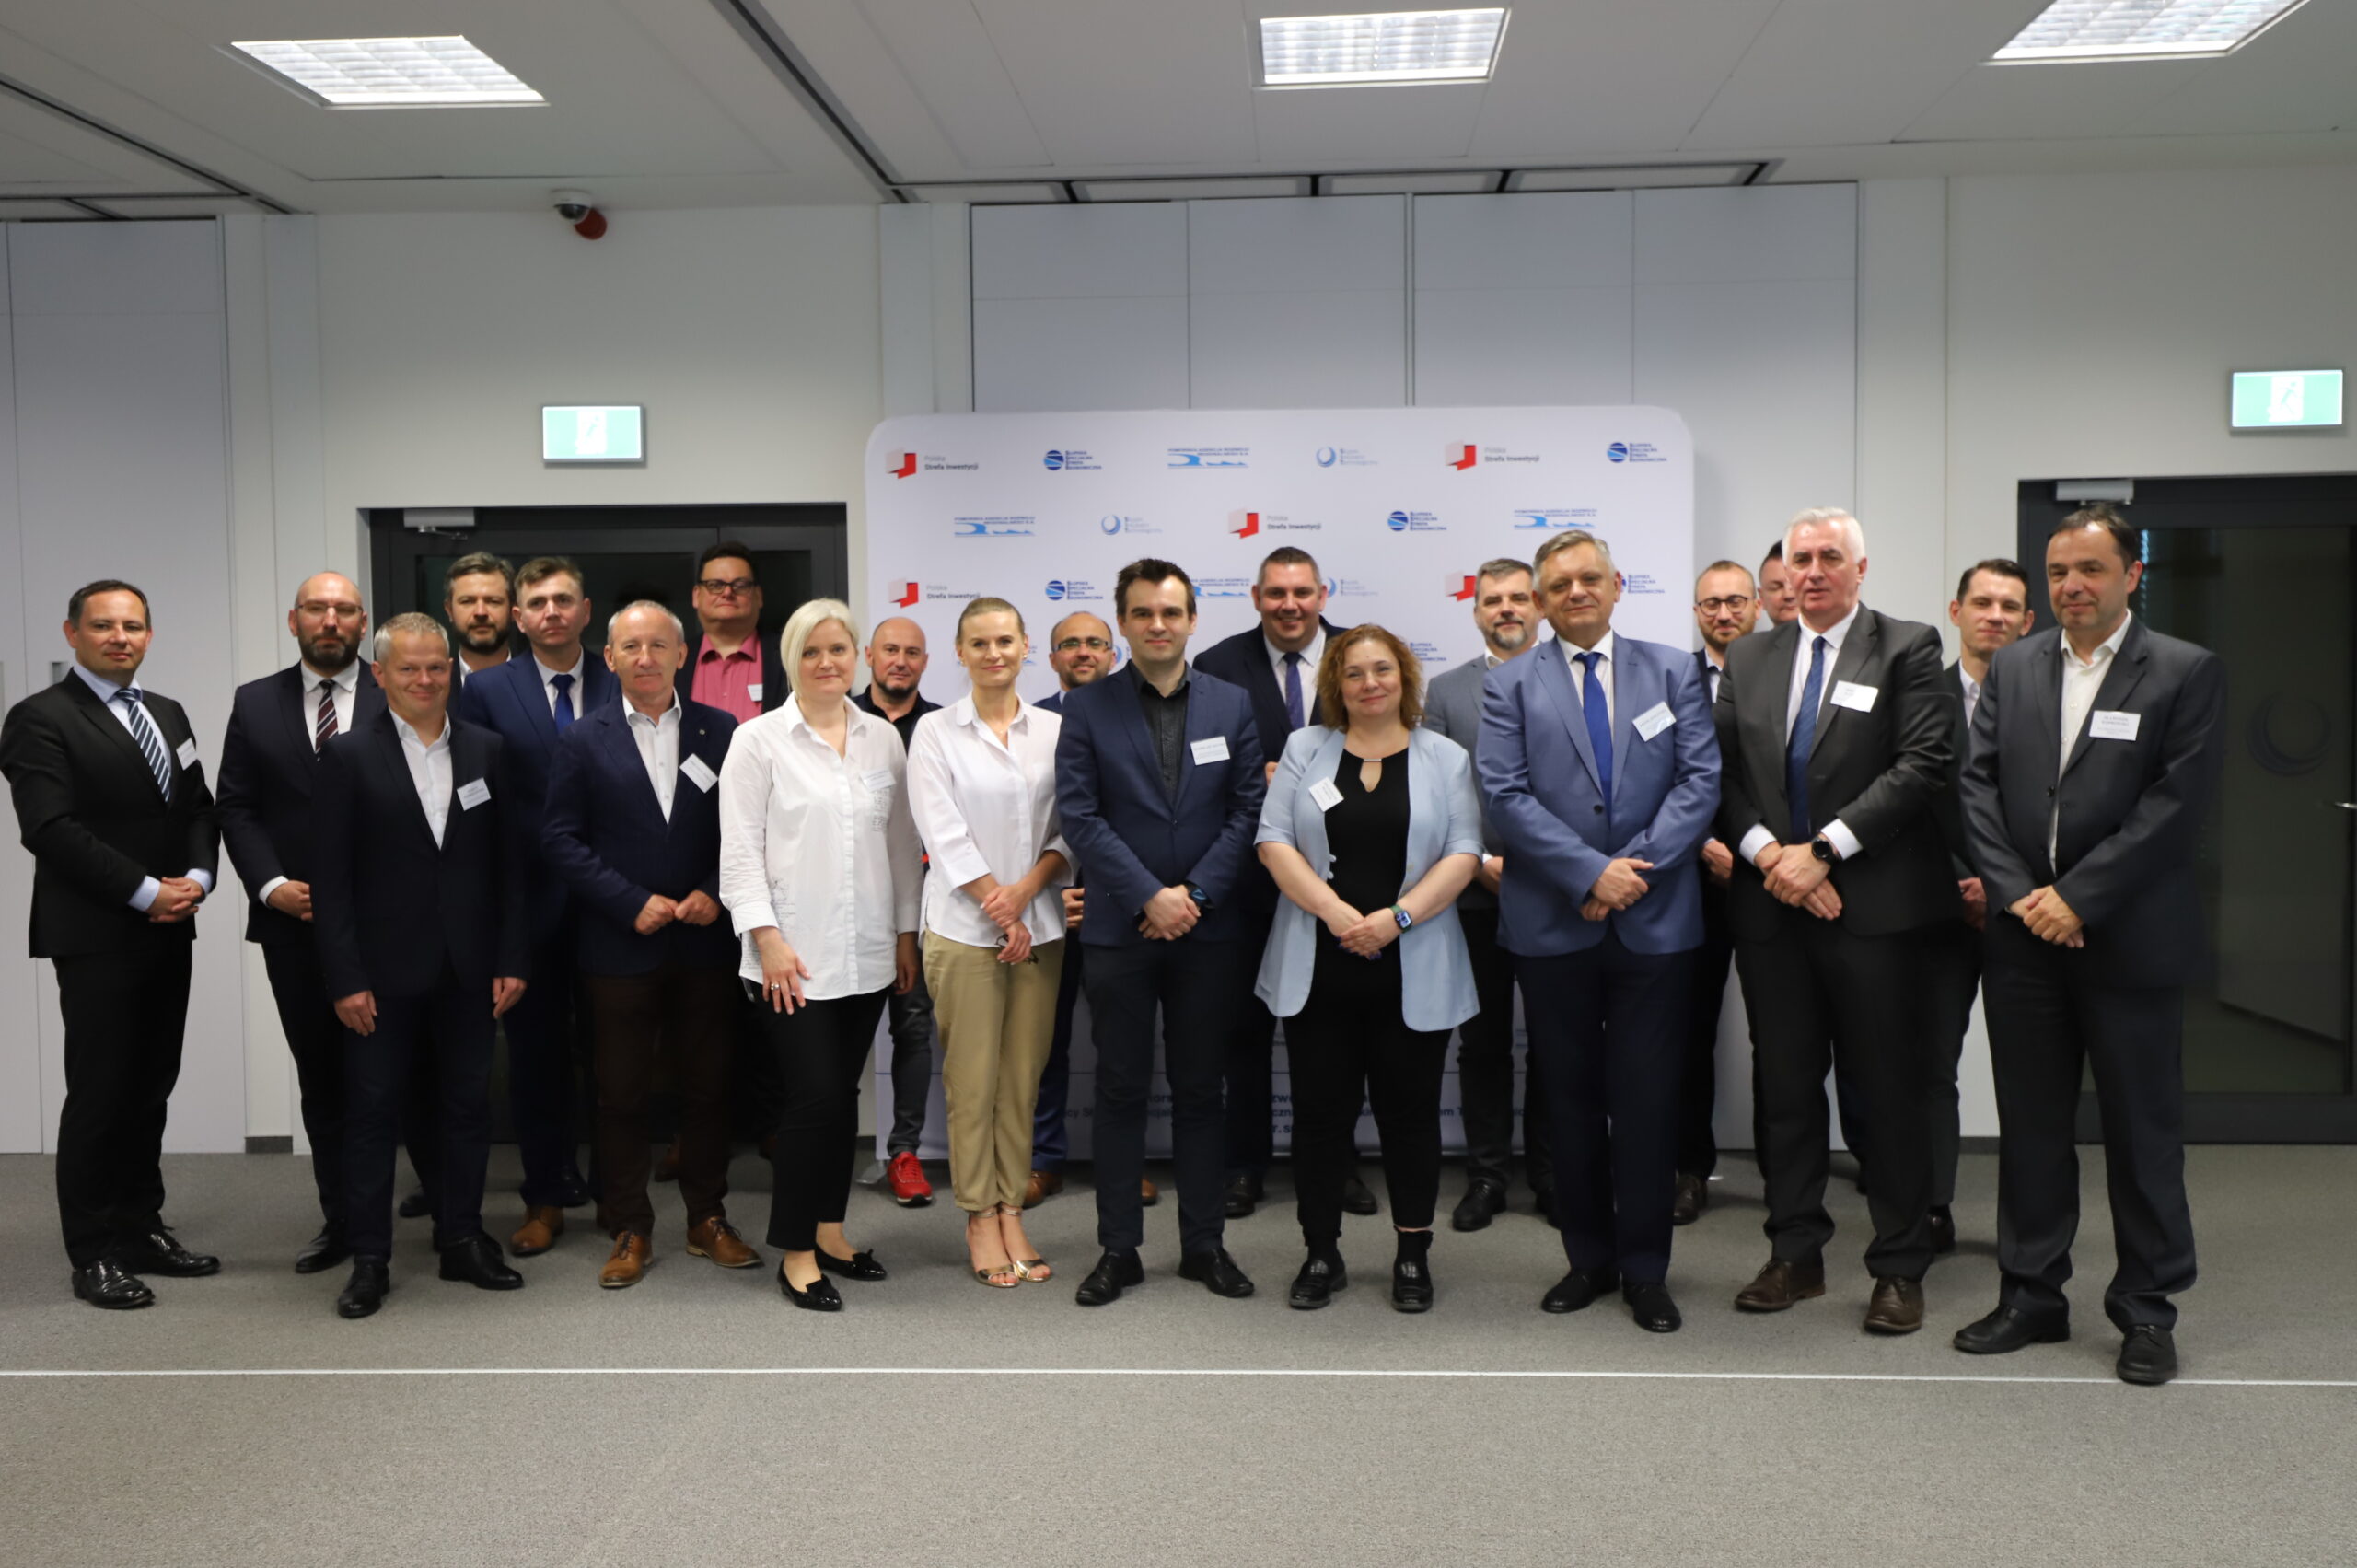 Ważny krok dla rozwoju gospodarczego regionu. W Słupsku odbyło się pierwsze posiedzenie Rady Rozwoju Obszaru Gospodarczego SSSE